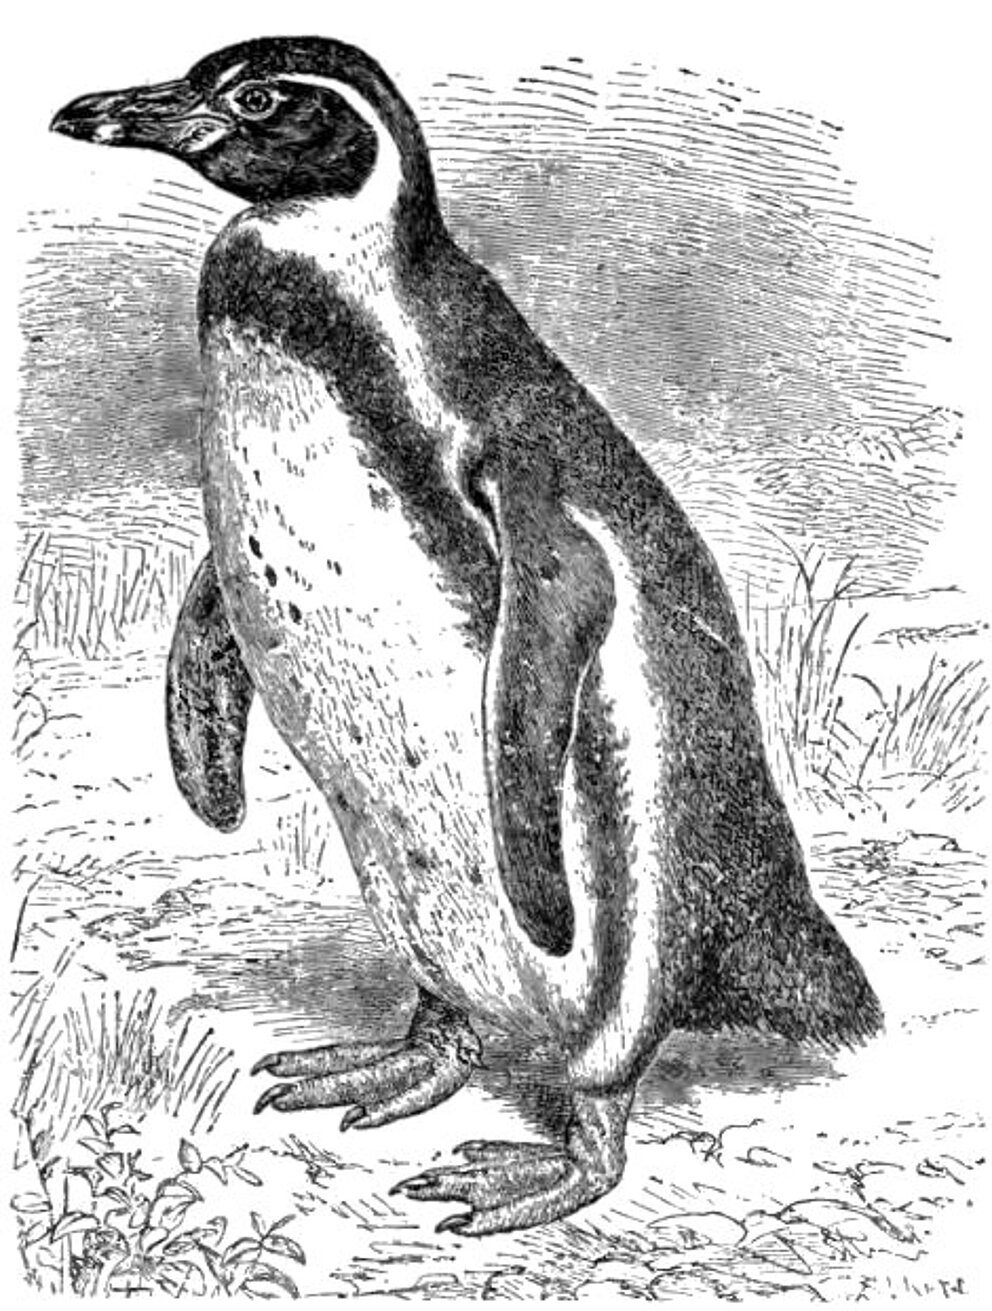 Der Humboldt-Pinguin kommt in Südamerika vor. 